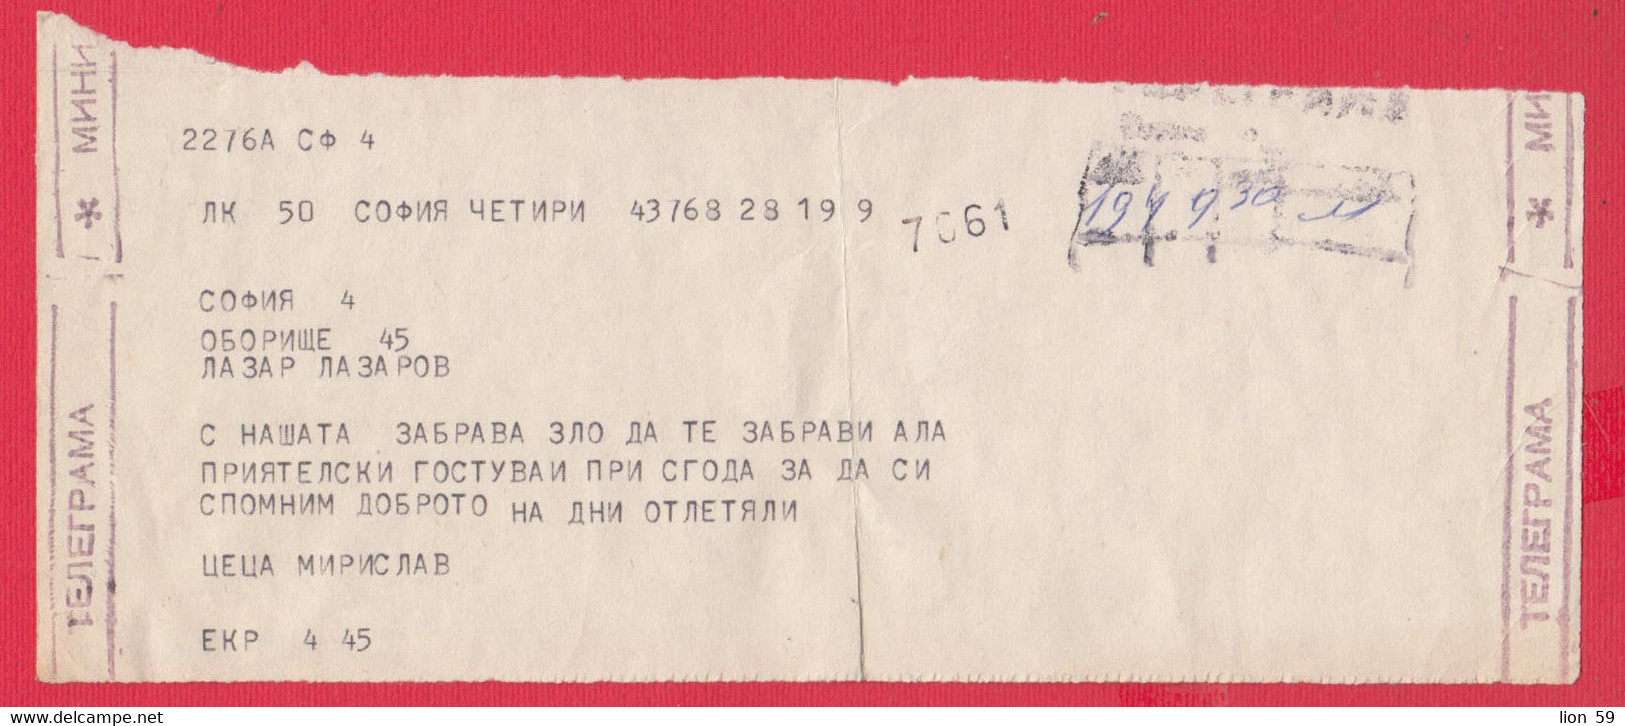 116K199 / Bulgaria 19.. Form ???  Telegram Telegramme Telegramm , Sofia - Sofia , Bulgarie Bulgarien - Cartas & Documentos